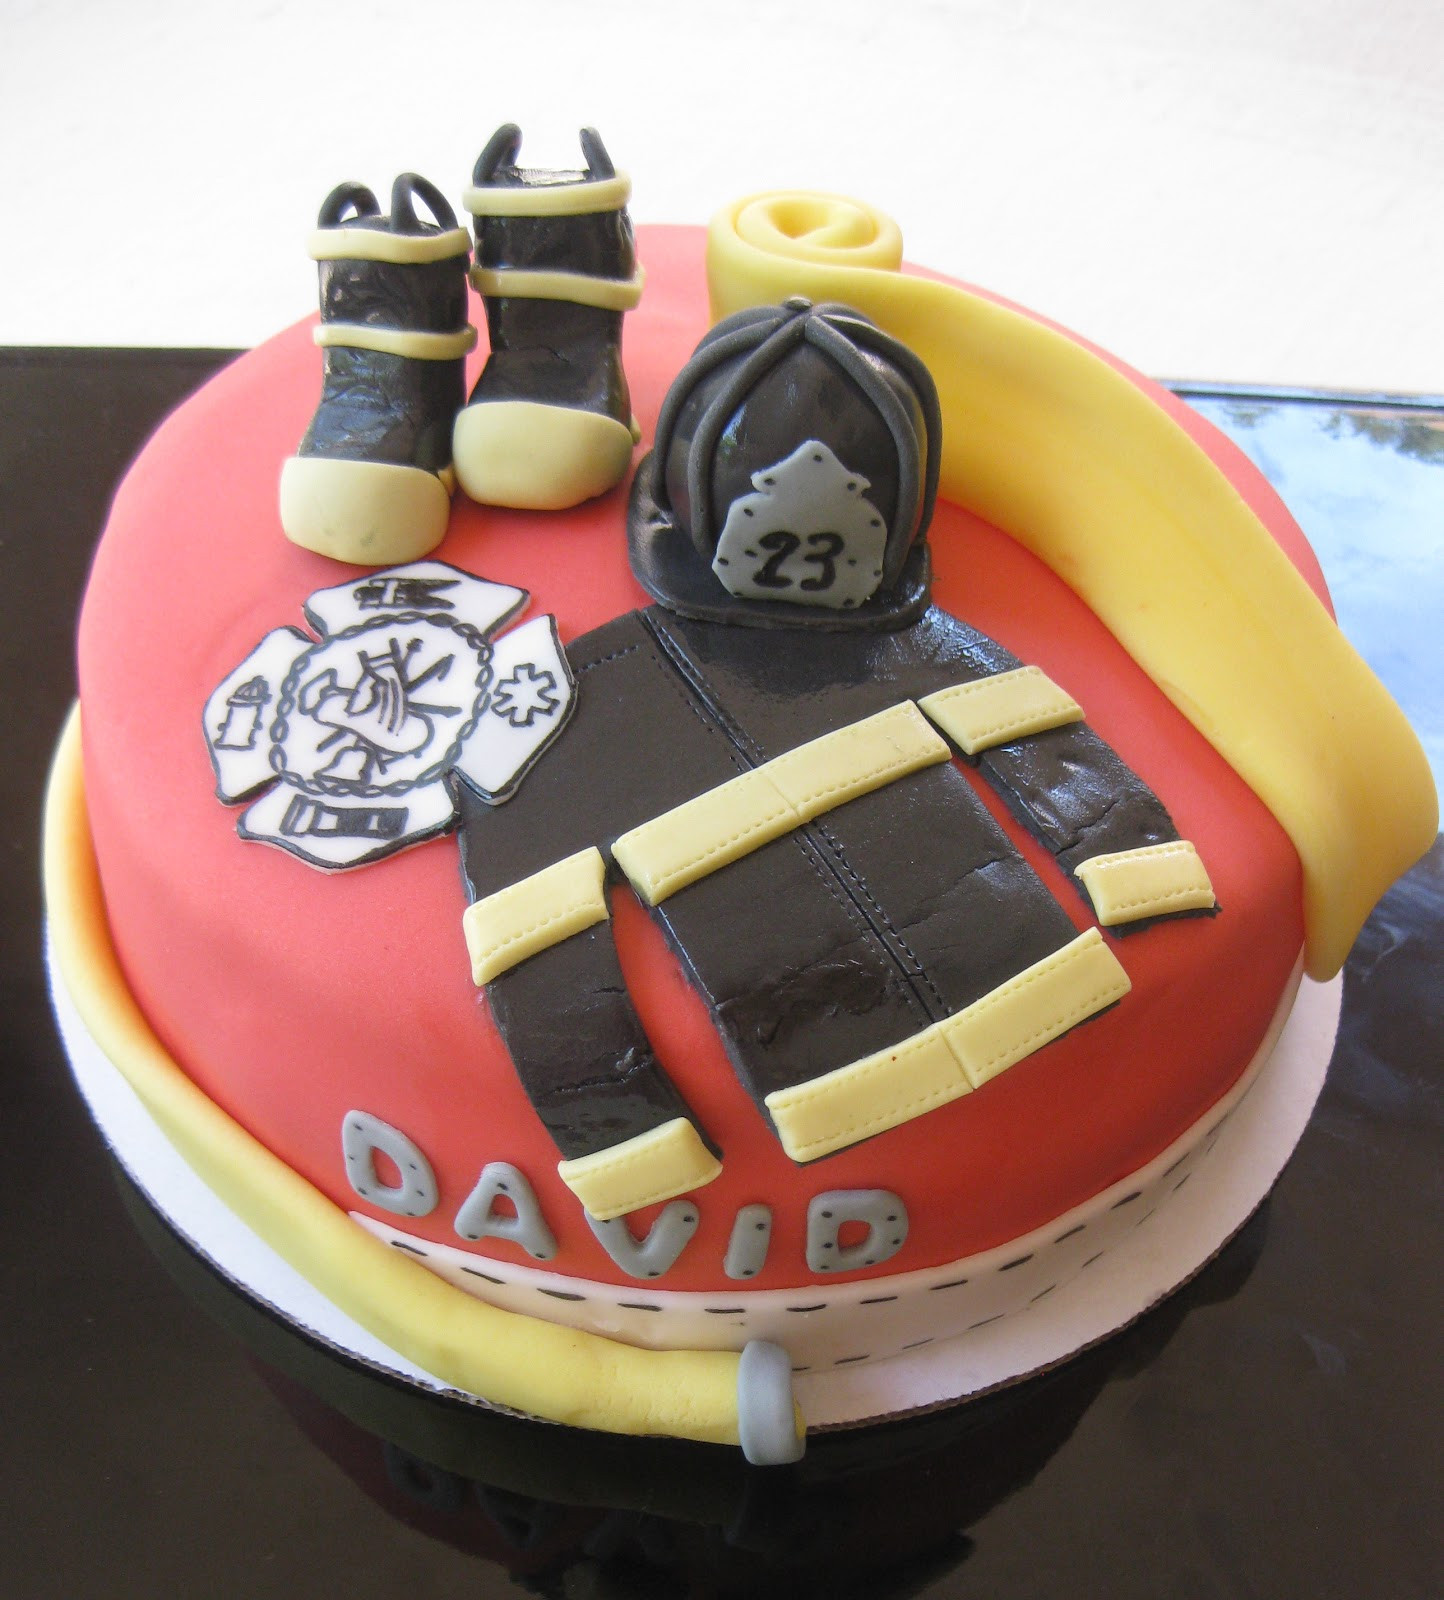 Firefighter Birthday Cake
 The Cake Baketress Firefighter David s Birthday Cake